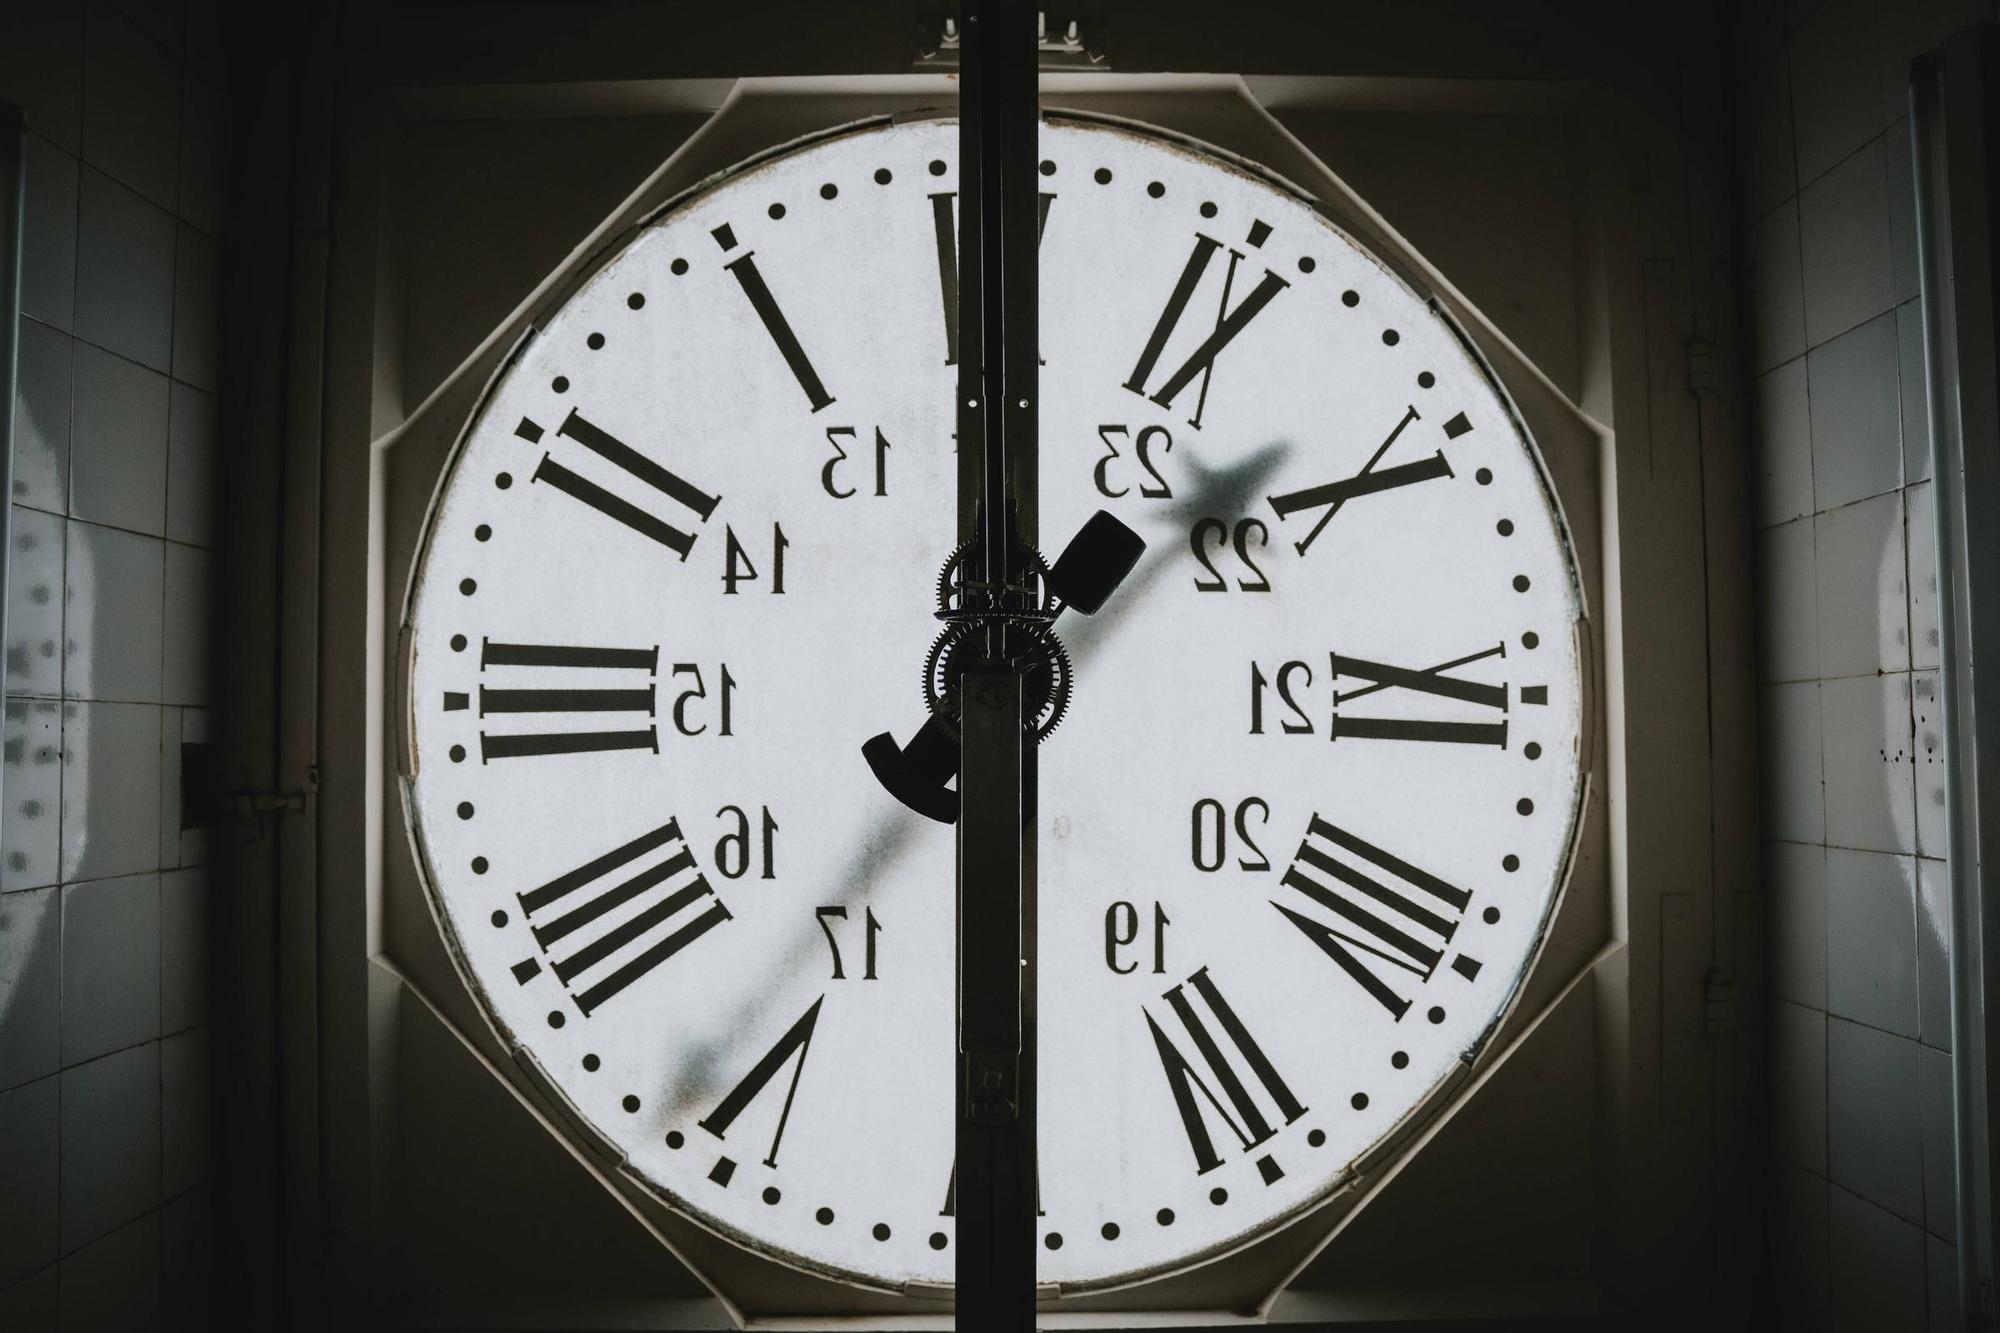 ‘En Figuera’ espera su gran noche: El reloj de la plaza de Cort, ya engrasado para dar las campanadas de Nochevieja